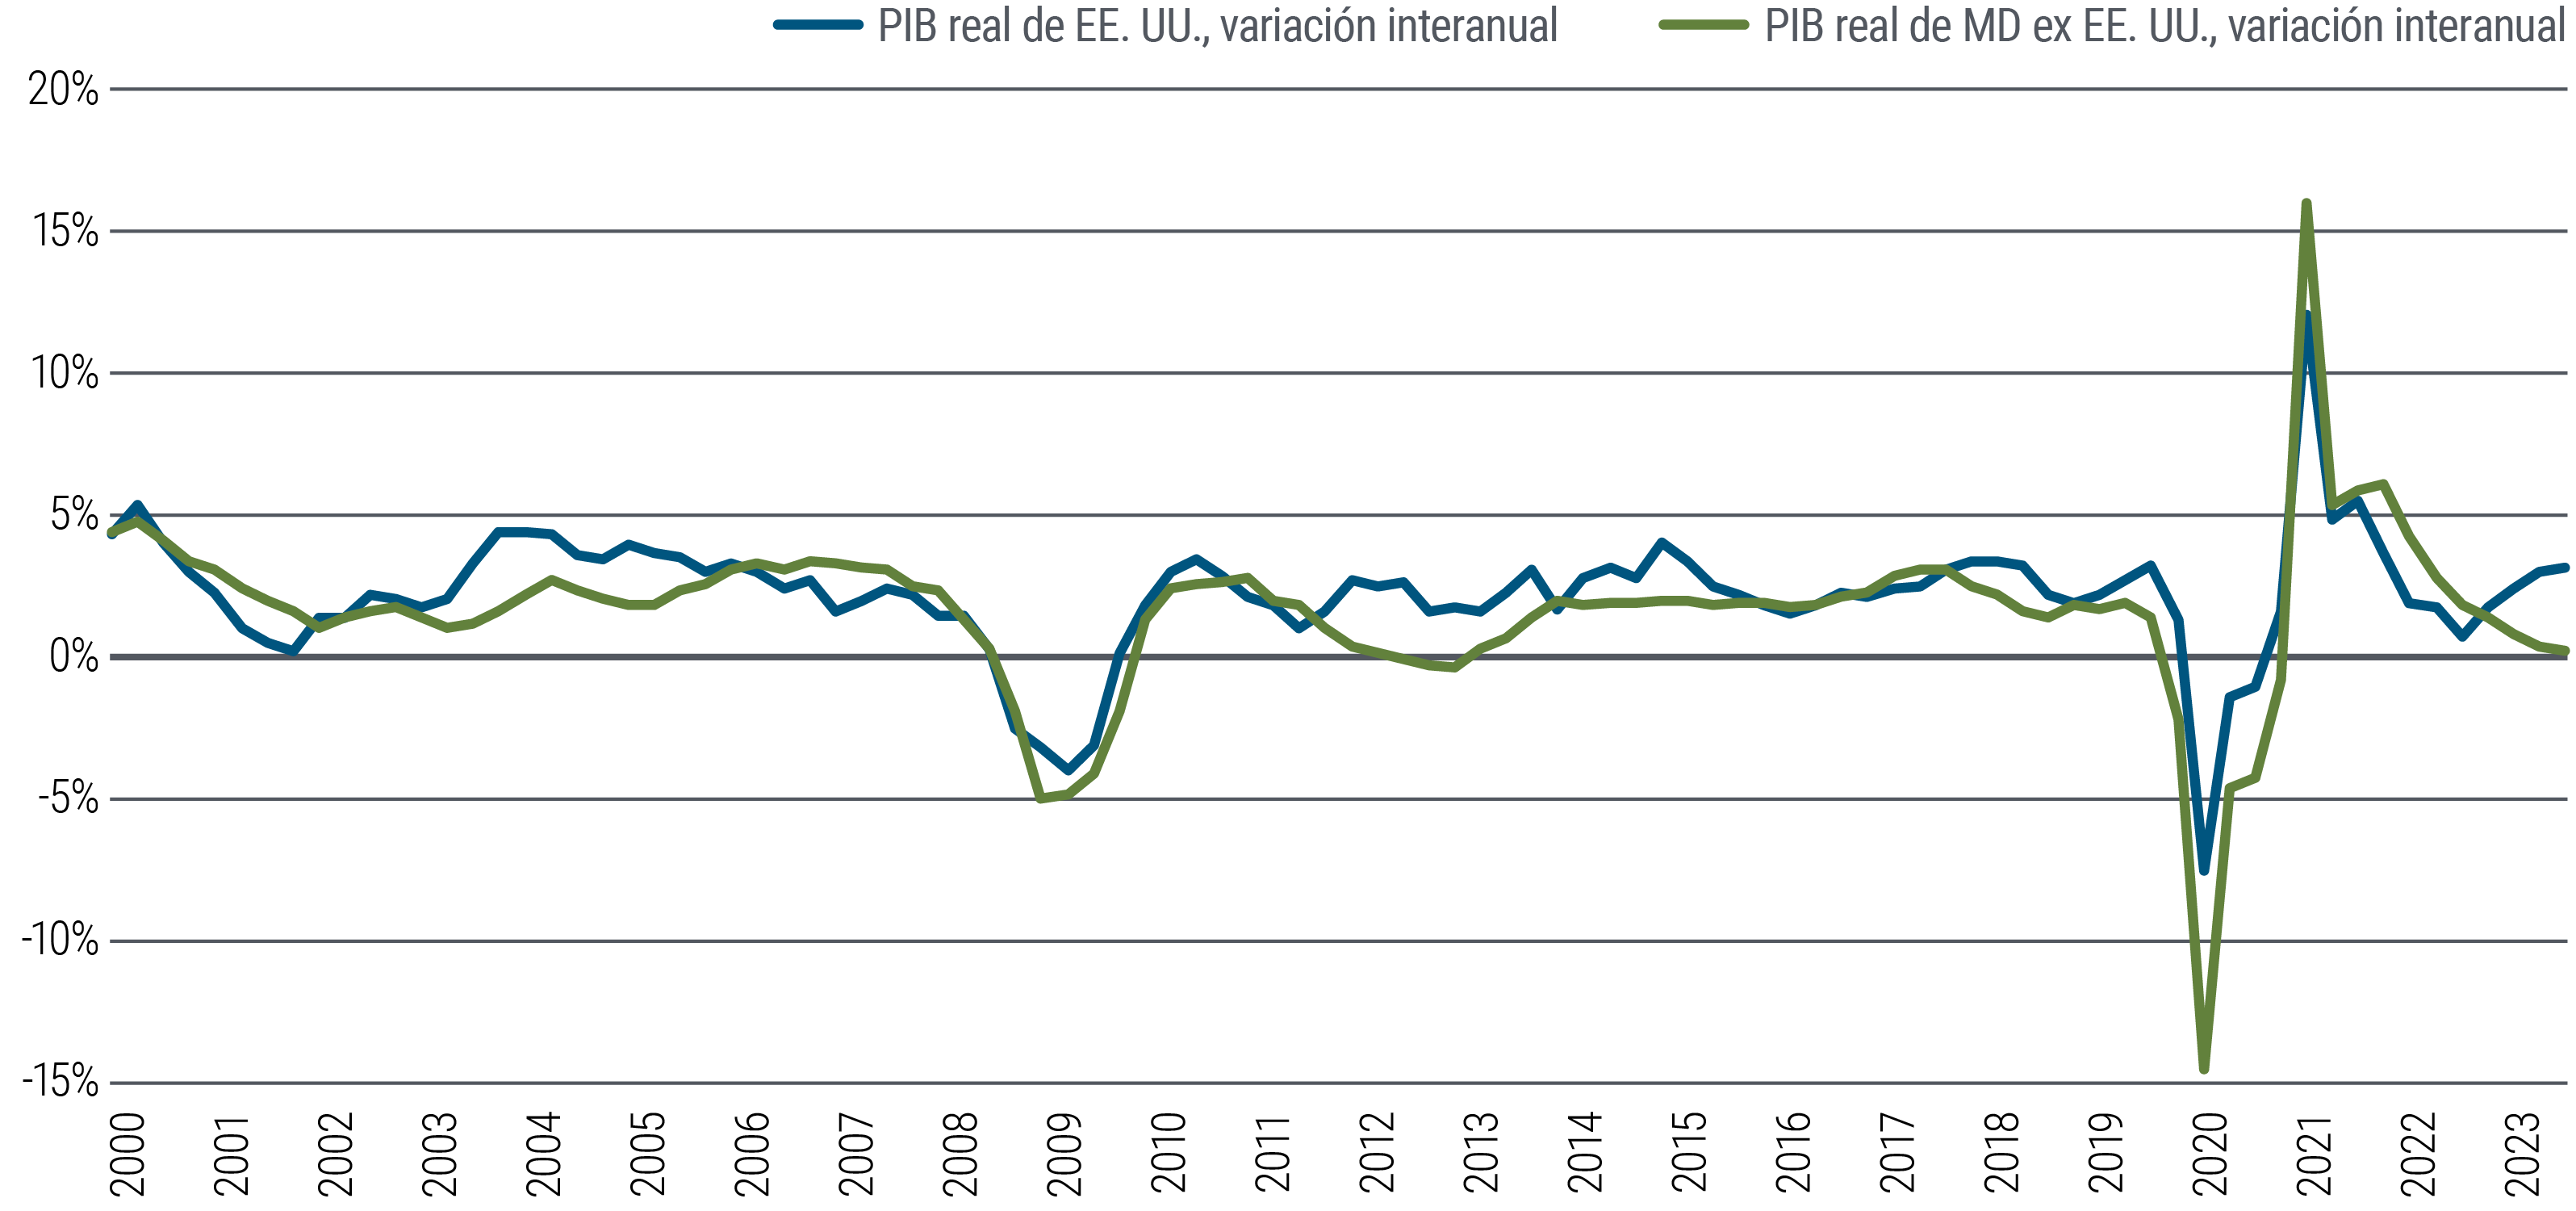 El gráfico 1 es un gráfico de líneas que, basándose en el PIB, compara el comportamiento económico a largo plazo de EE. UU. con el de otros mercados desarrollados (eurozona, Reino Unido, Australia y Canadá) hasta principios de 2024. A largo plazo, las economías tienden a moverse en paralelo, pero muestran divergencias desde aproximadamente 2021, ya que el PIB estadounidense ha rebotado hasta cerca del 3%, mientras que, en otros mercados desarrollados, el crecimiento del PIB ha caído prácticamente al 0%.